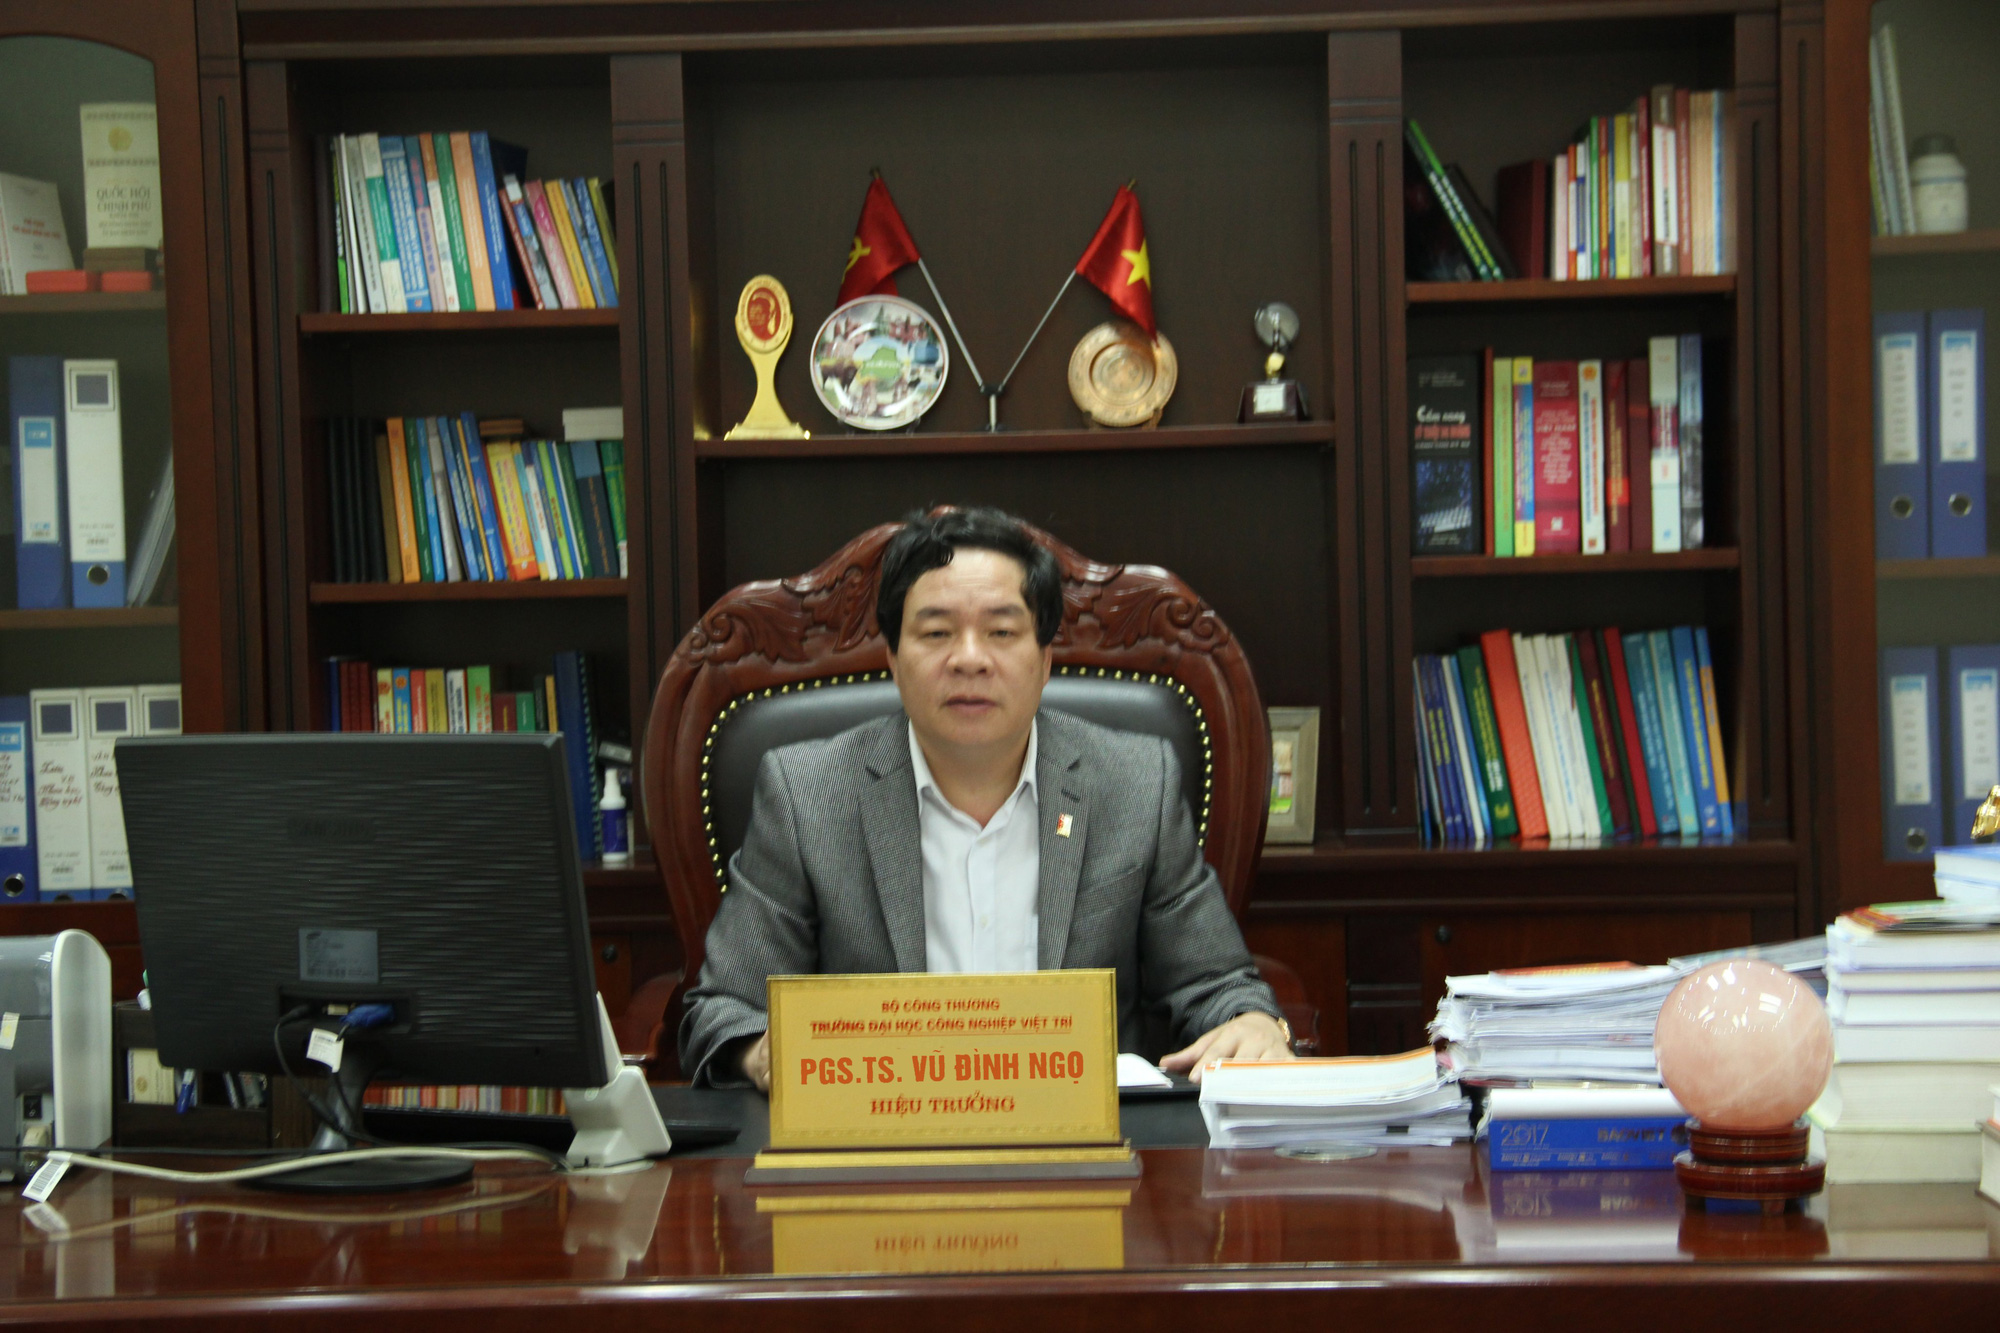 Trường đại học Công Nghiệp Việt Trì - Trường đạt chuẩn kiểm định chất lượng quốc gia - Ảnh 1.